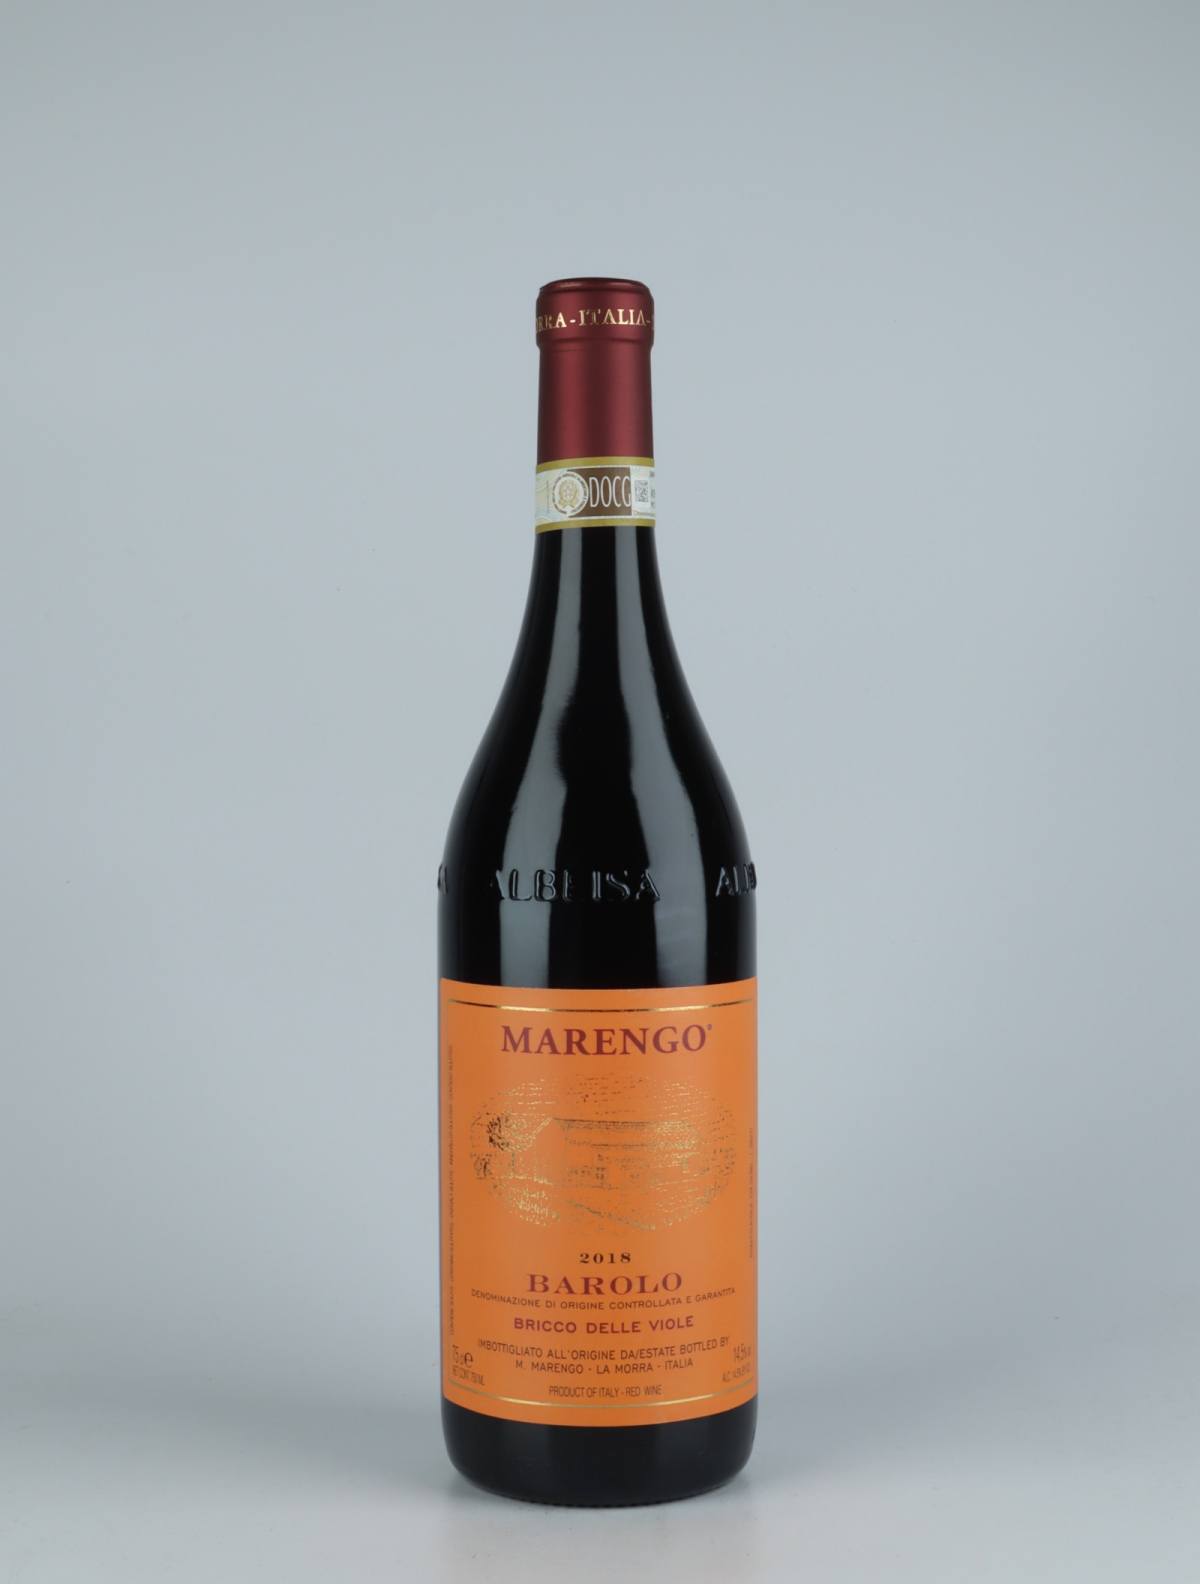 En flaske 2018 Barolo - Bricco delle Viole Rødvin fra Mario Marengo, Piemonte i Italien